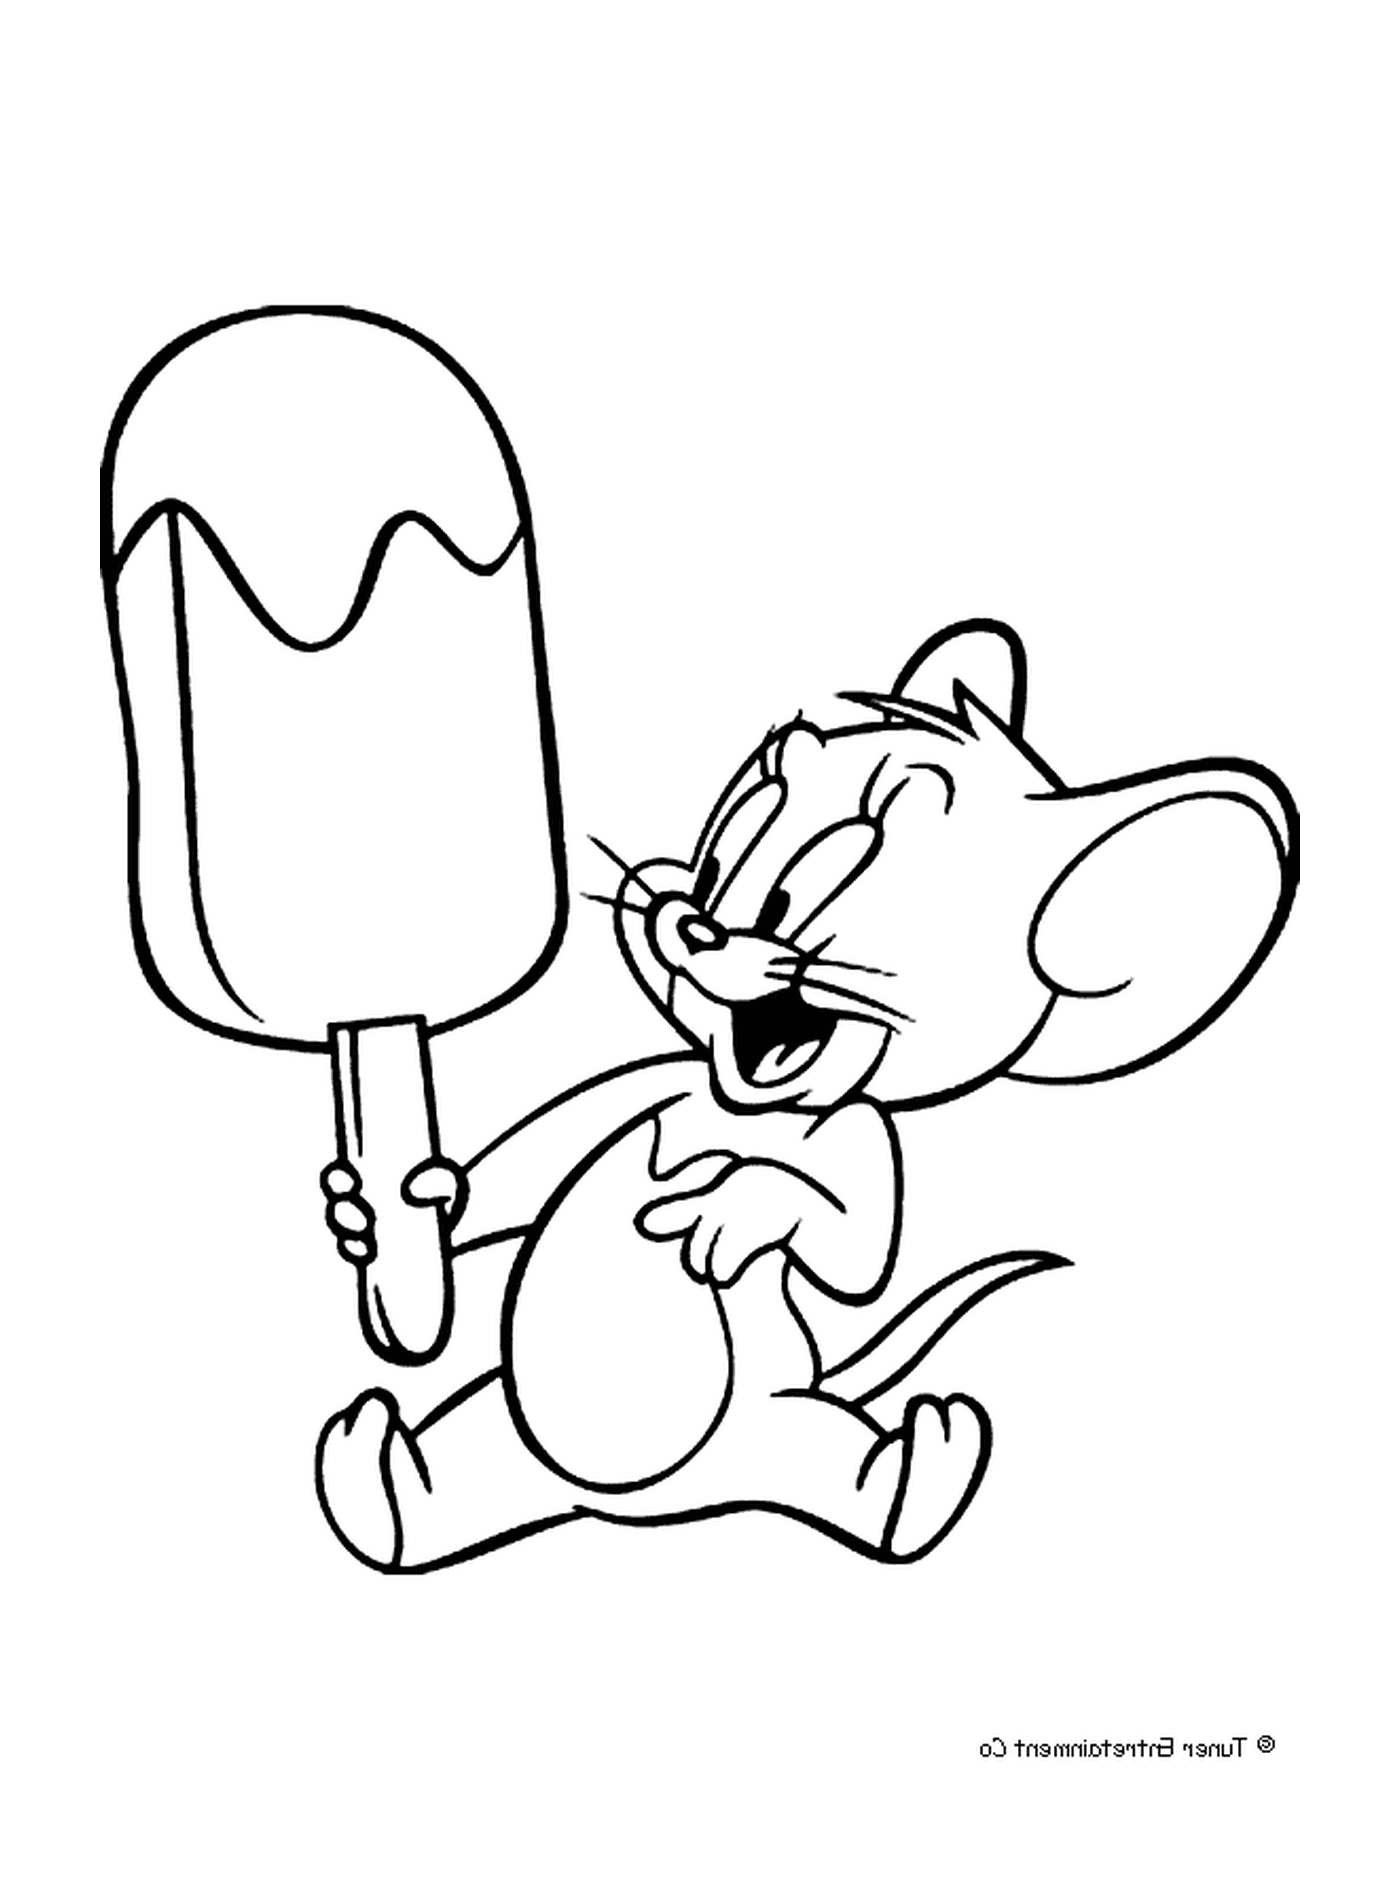  Jerry com um sorvete 